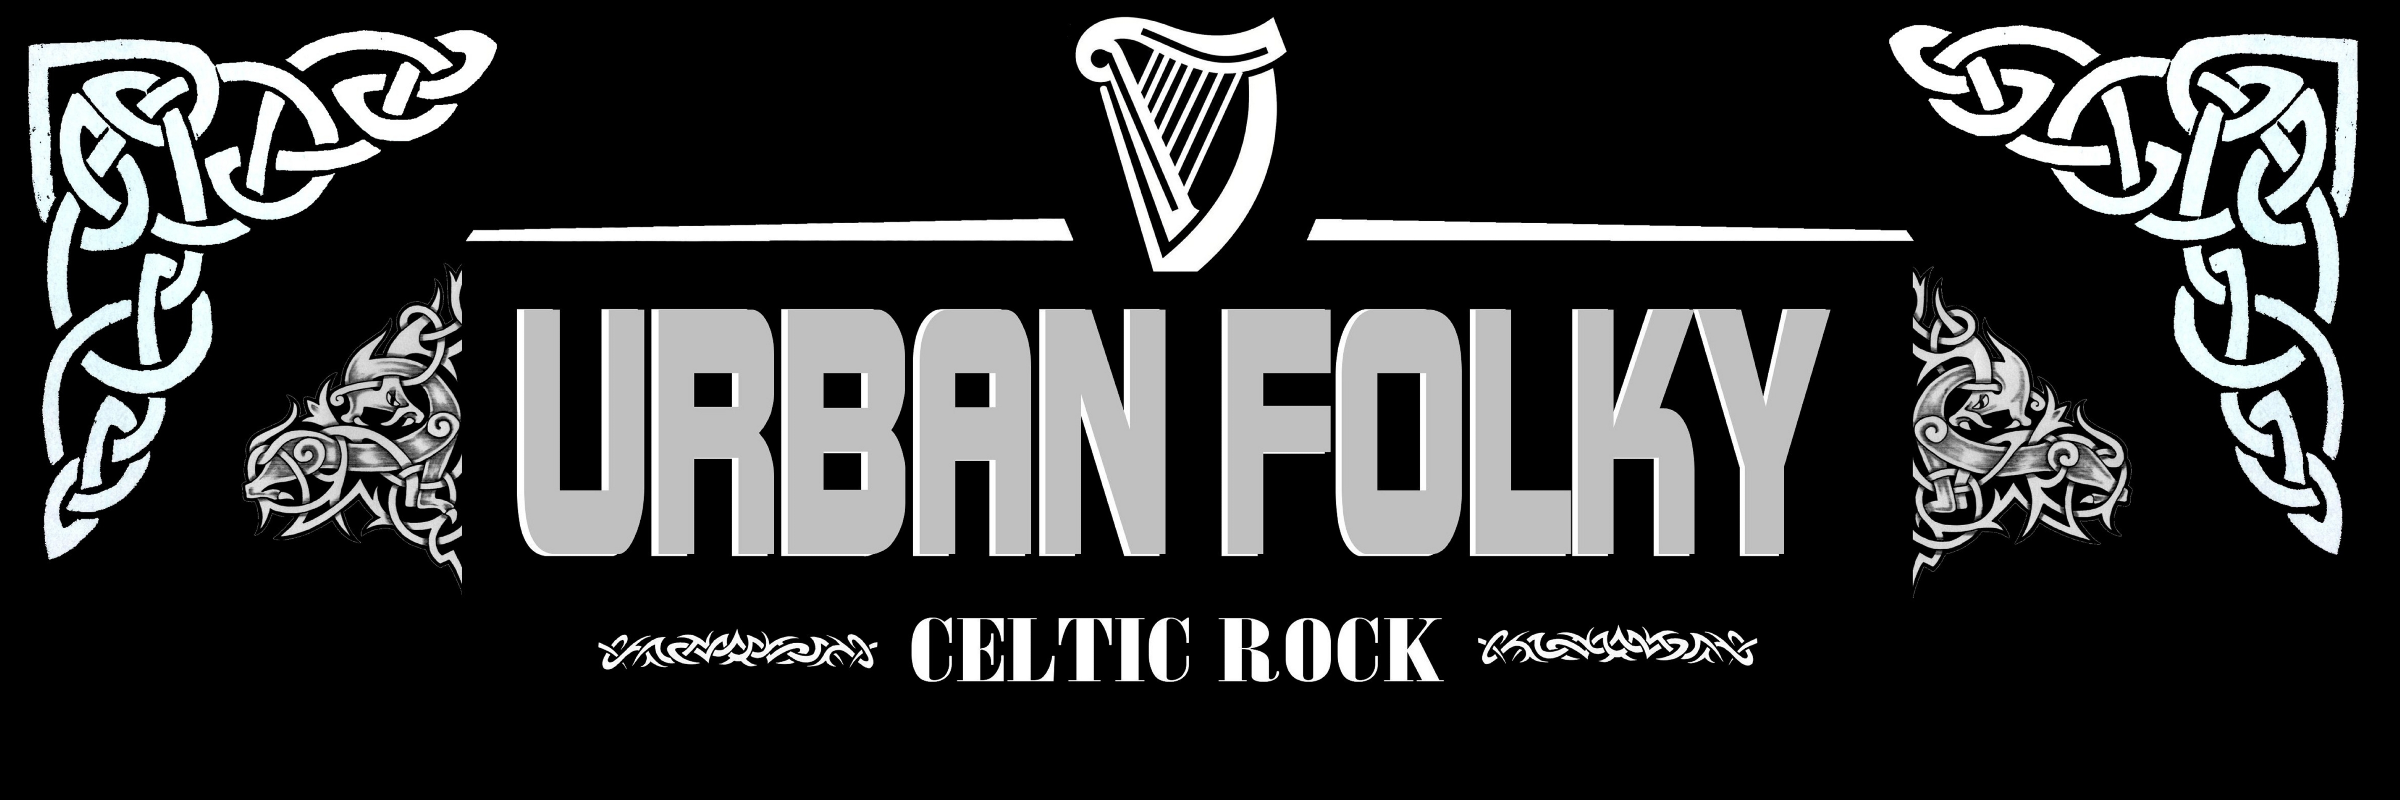 Urban Folky celtic music, groupe de musique Musique Celtique en représentation à Loire - photo de couverture n° 1